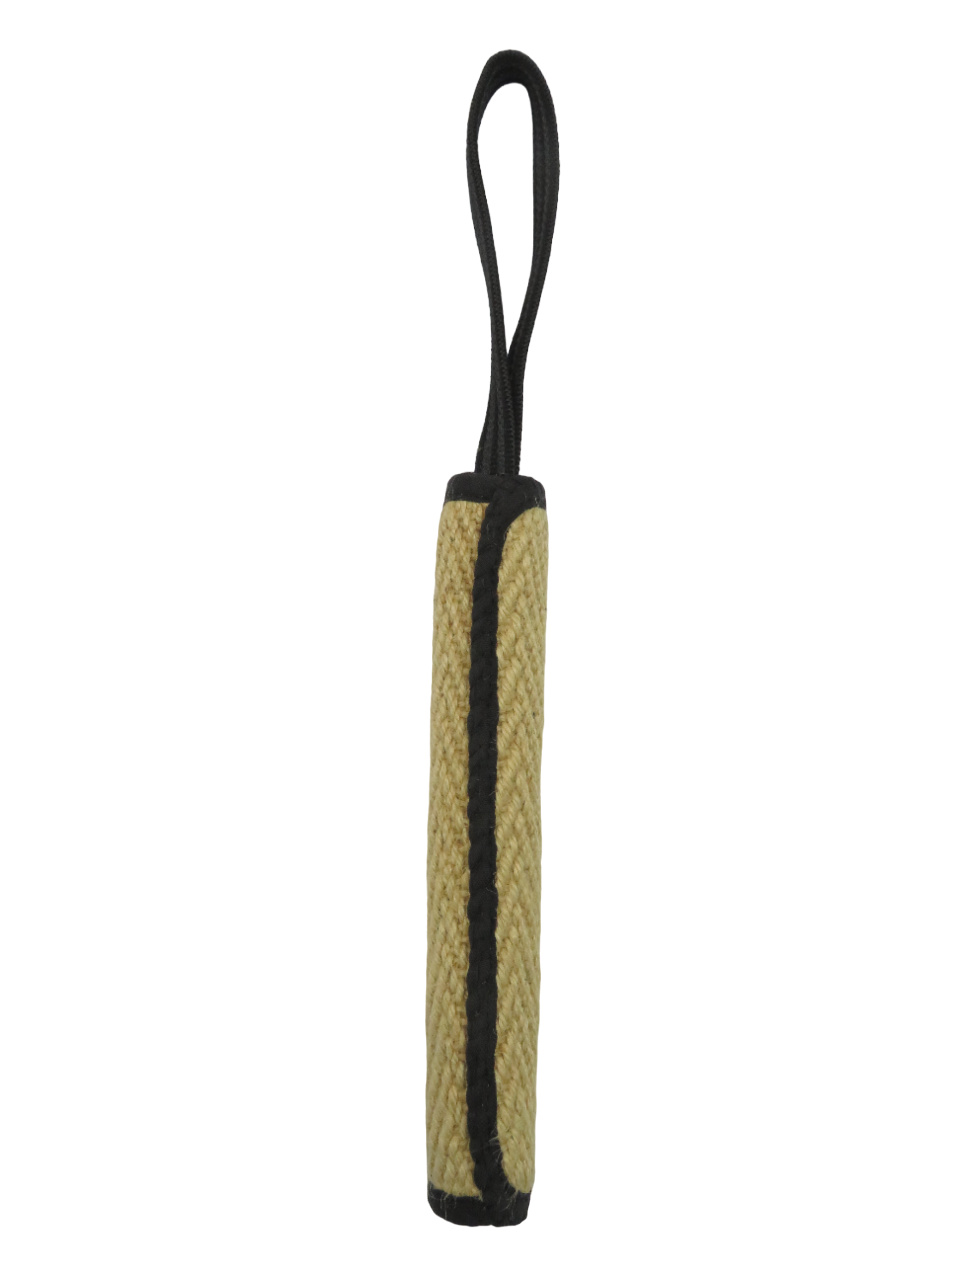 BOW WOW BOW WOW джутовая палка с 9-миллиметровой прорезиненной ручкой (натуральная) (120 г) bow wow bow wow джутовая палка без ручки натуральная 200 г